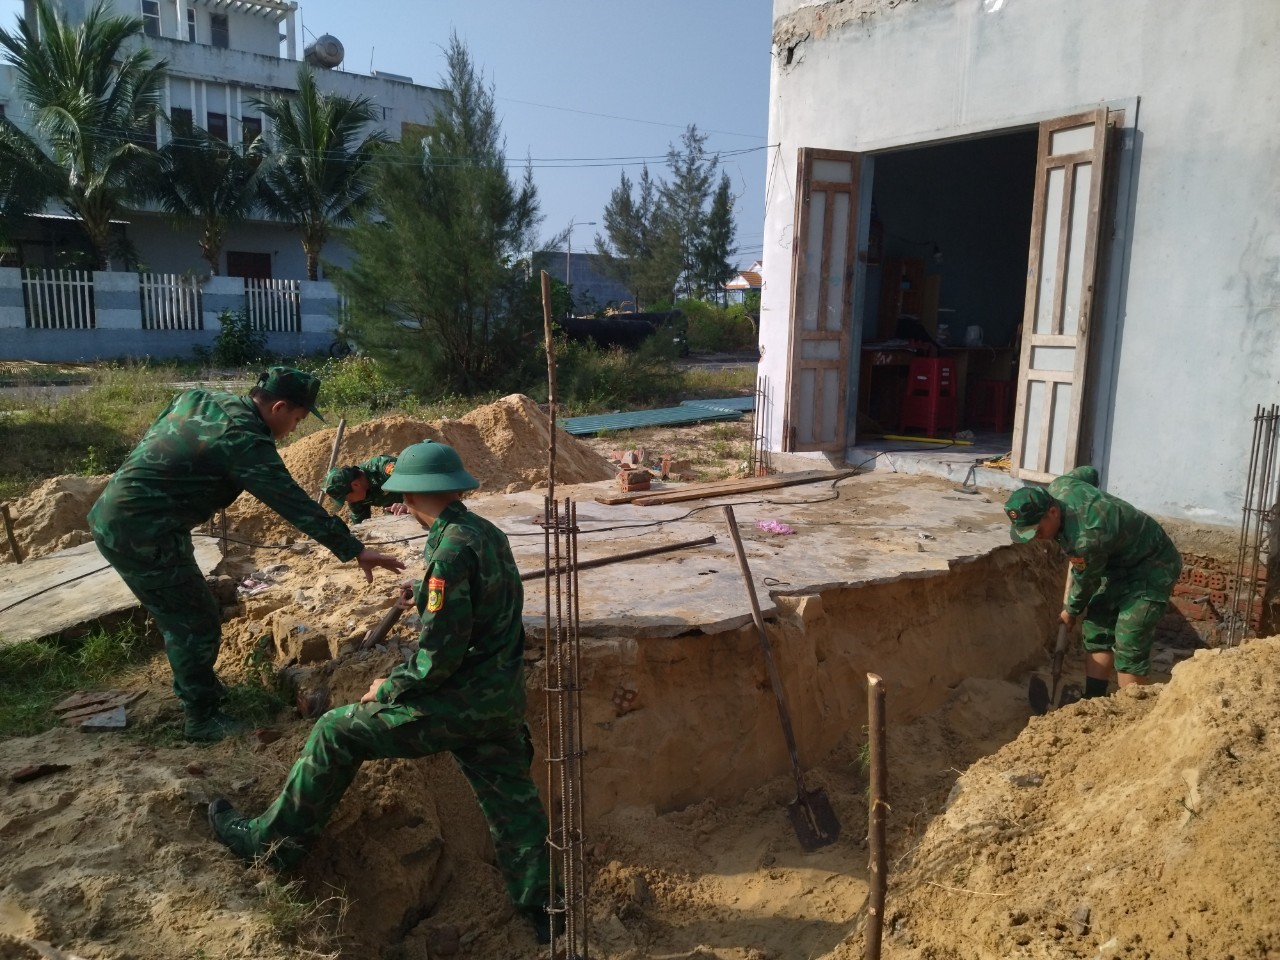 Ủy ban MTTQ Việt Nam xã đã phối hợp với lực lượng sĩ quan, quân nhân Đồn Biên phòng Tam Thanh hỗ trợ người dân tháo gỡ nhà cửa